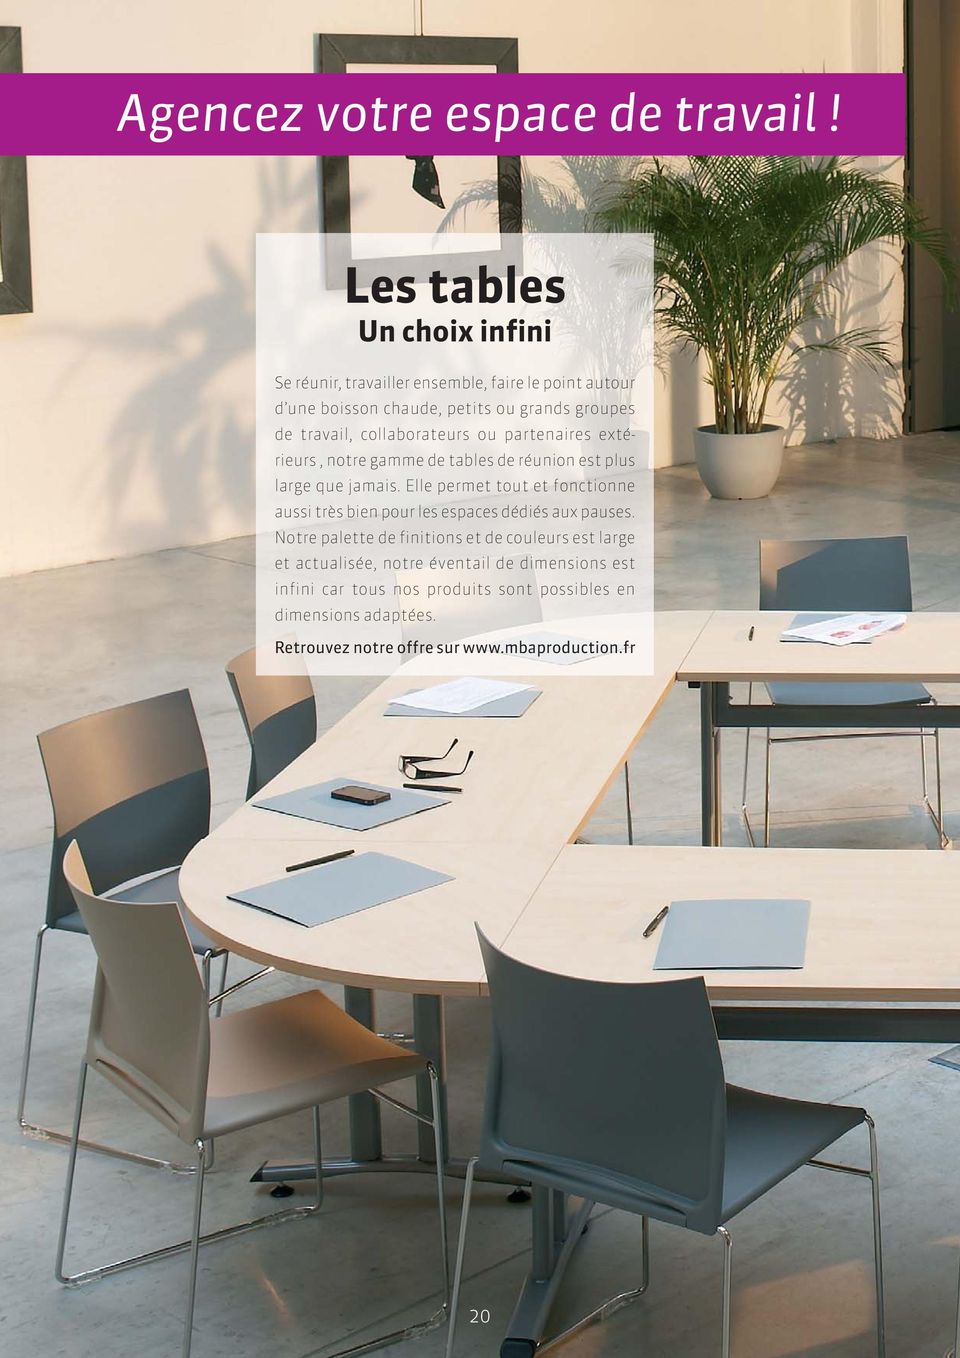 collaborateurs ou partenaires extérieurs, notre gamme de tables de réunion est plus large que jamais.